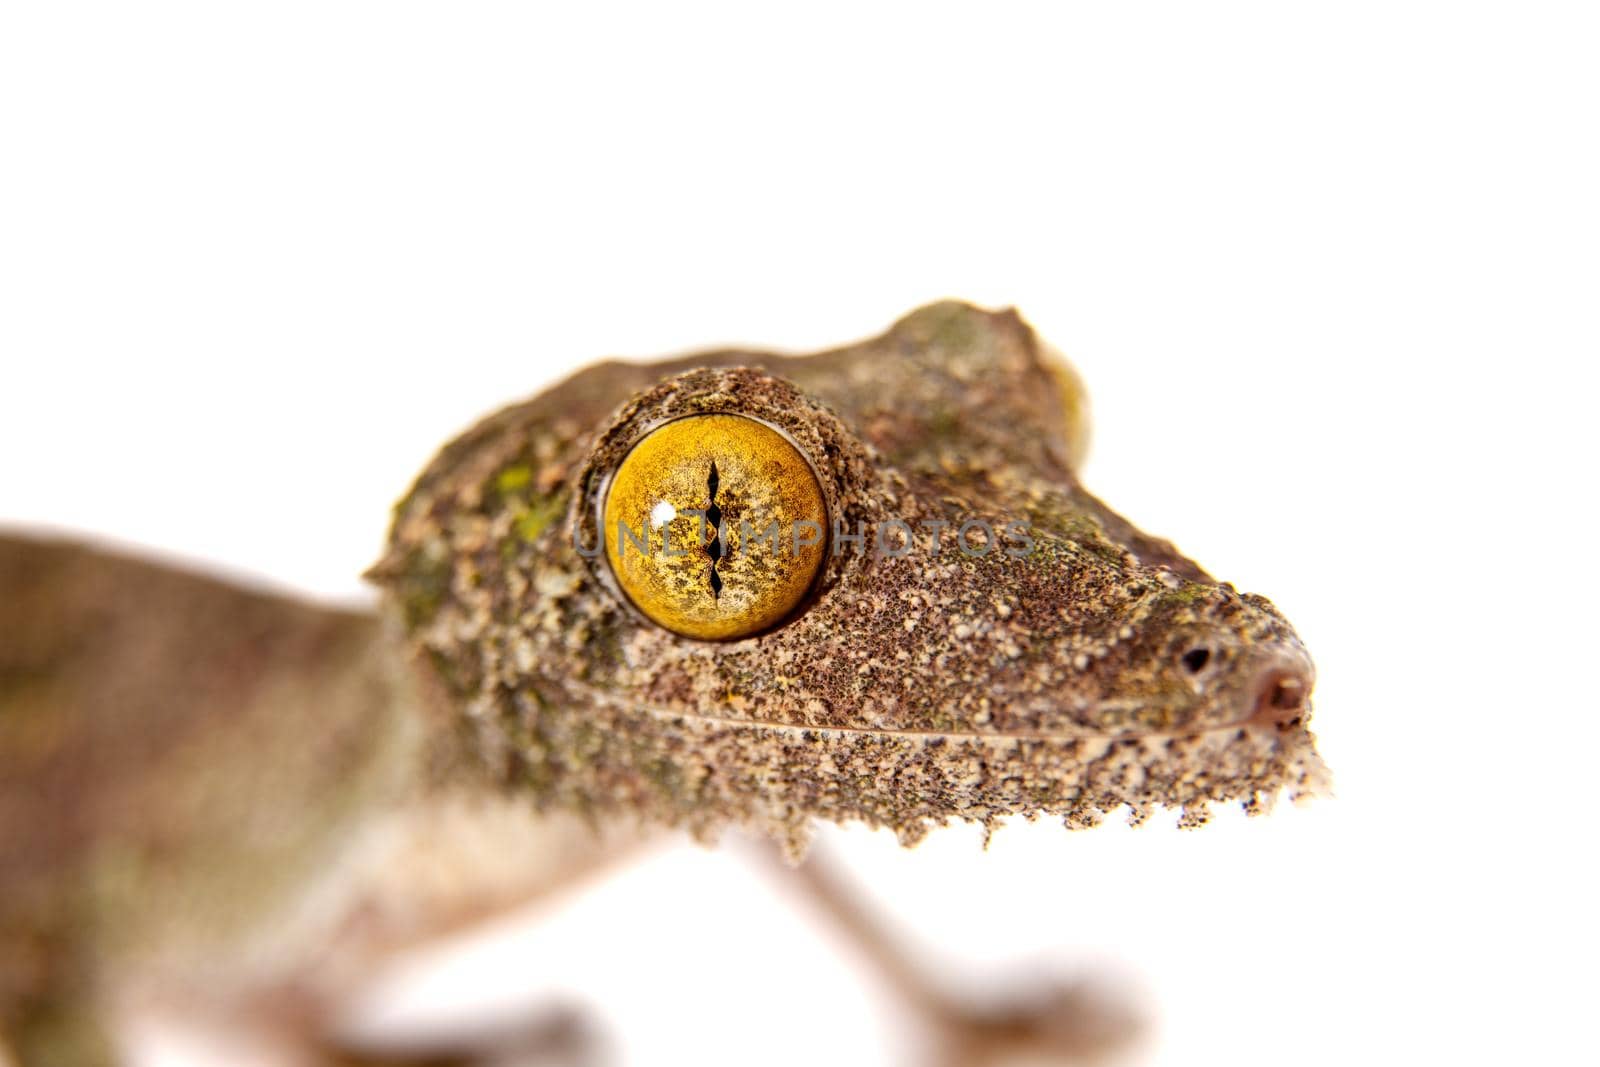 Leaf-tailed Gecko, uroplatus sameiti isolated on white background